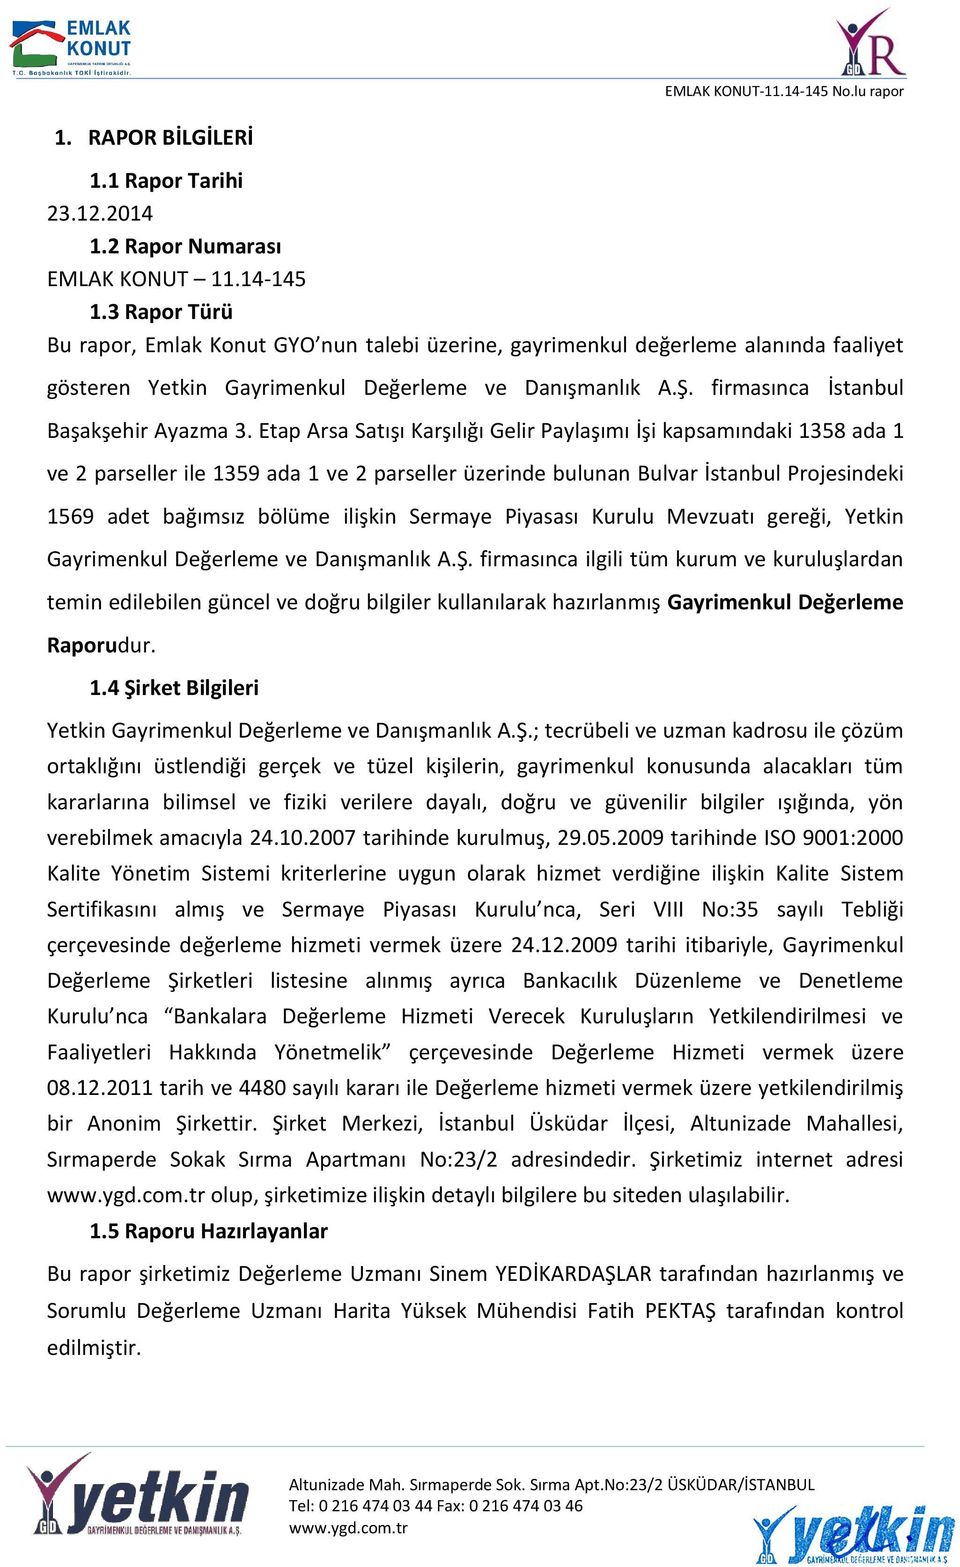 Etap Arsa Satışı Karşılığı Gelir Paylaşımı İşi kapsamındaki 1358 ada 1 ve 2 parseller ile 1359 ada 1 ve 2 parseller üzerinde bulunan Bulvar İstanbul Projesindeki 1569 adet bağımsız bölüme ilişkin